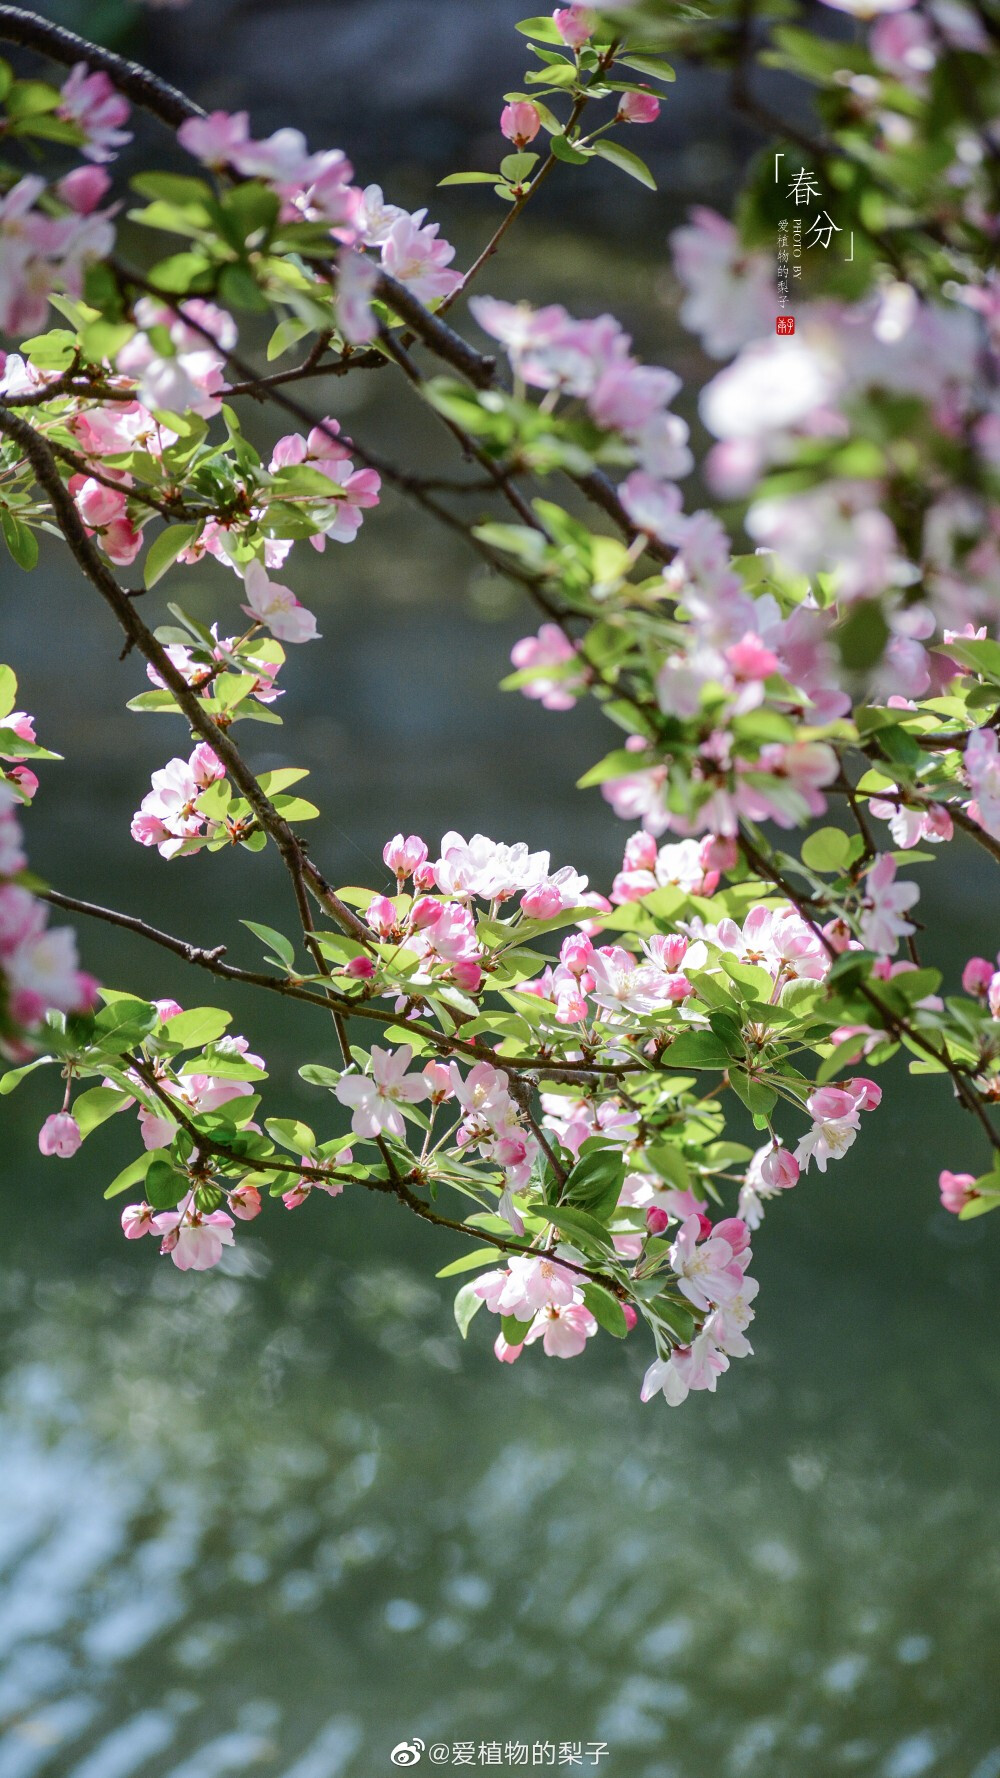 西府海棠盛放,最美胭脂色 摄影@爱植物的梨子 